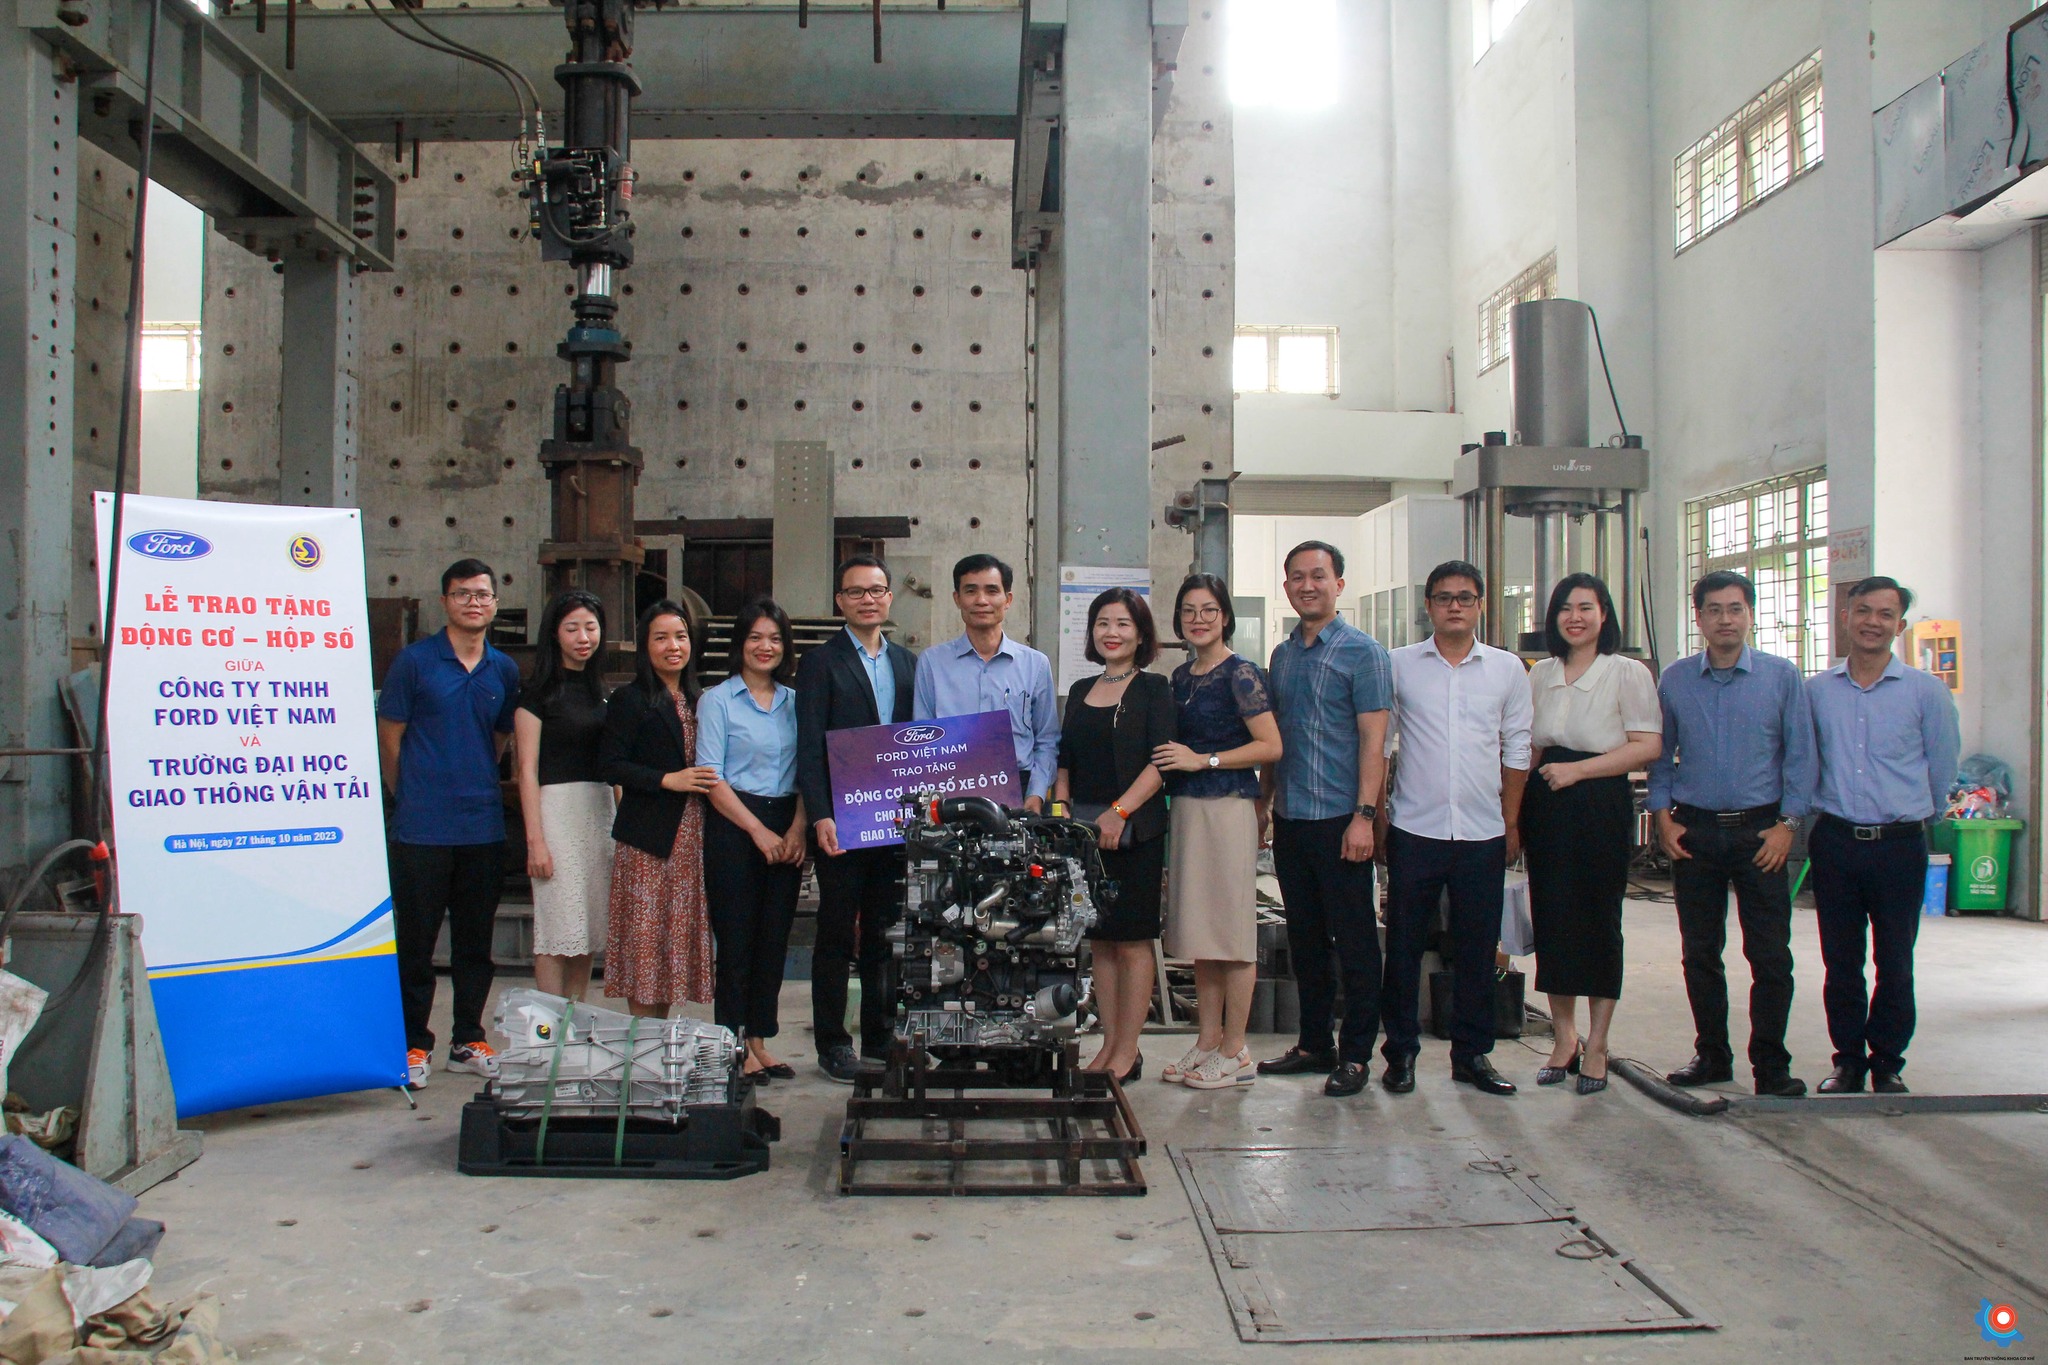 Lễ trao tặng động cơ - hộp số giữa công ty TNHH Ford Việt Nam và Trường Đại học Giao thông vận tải